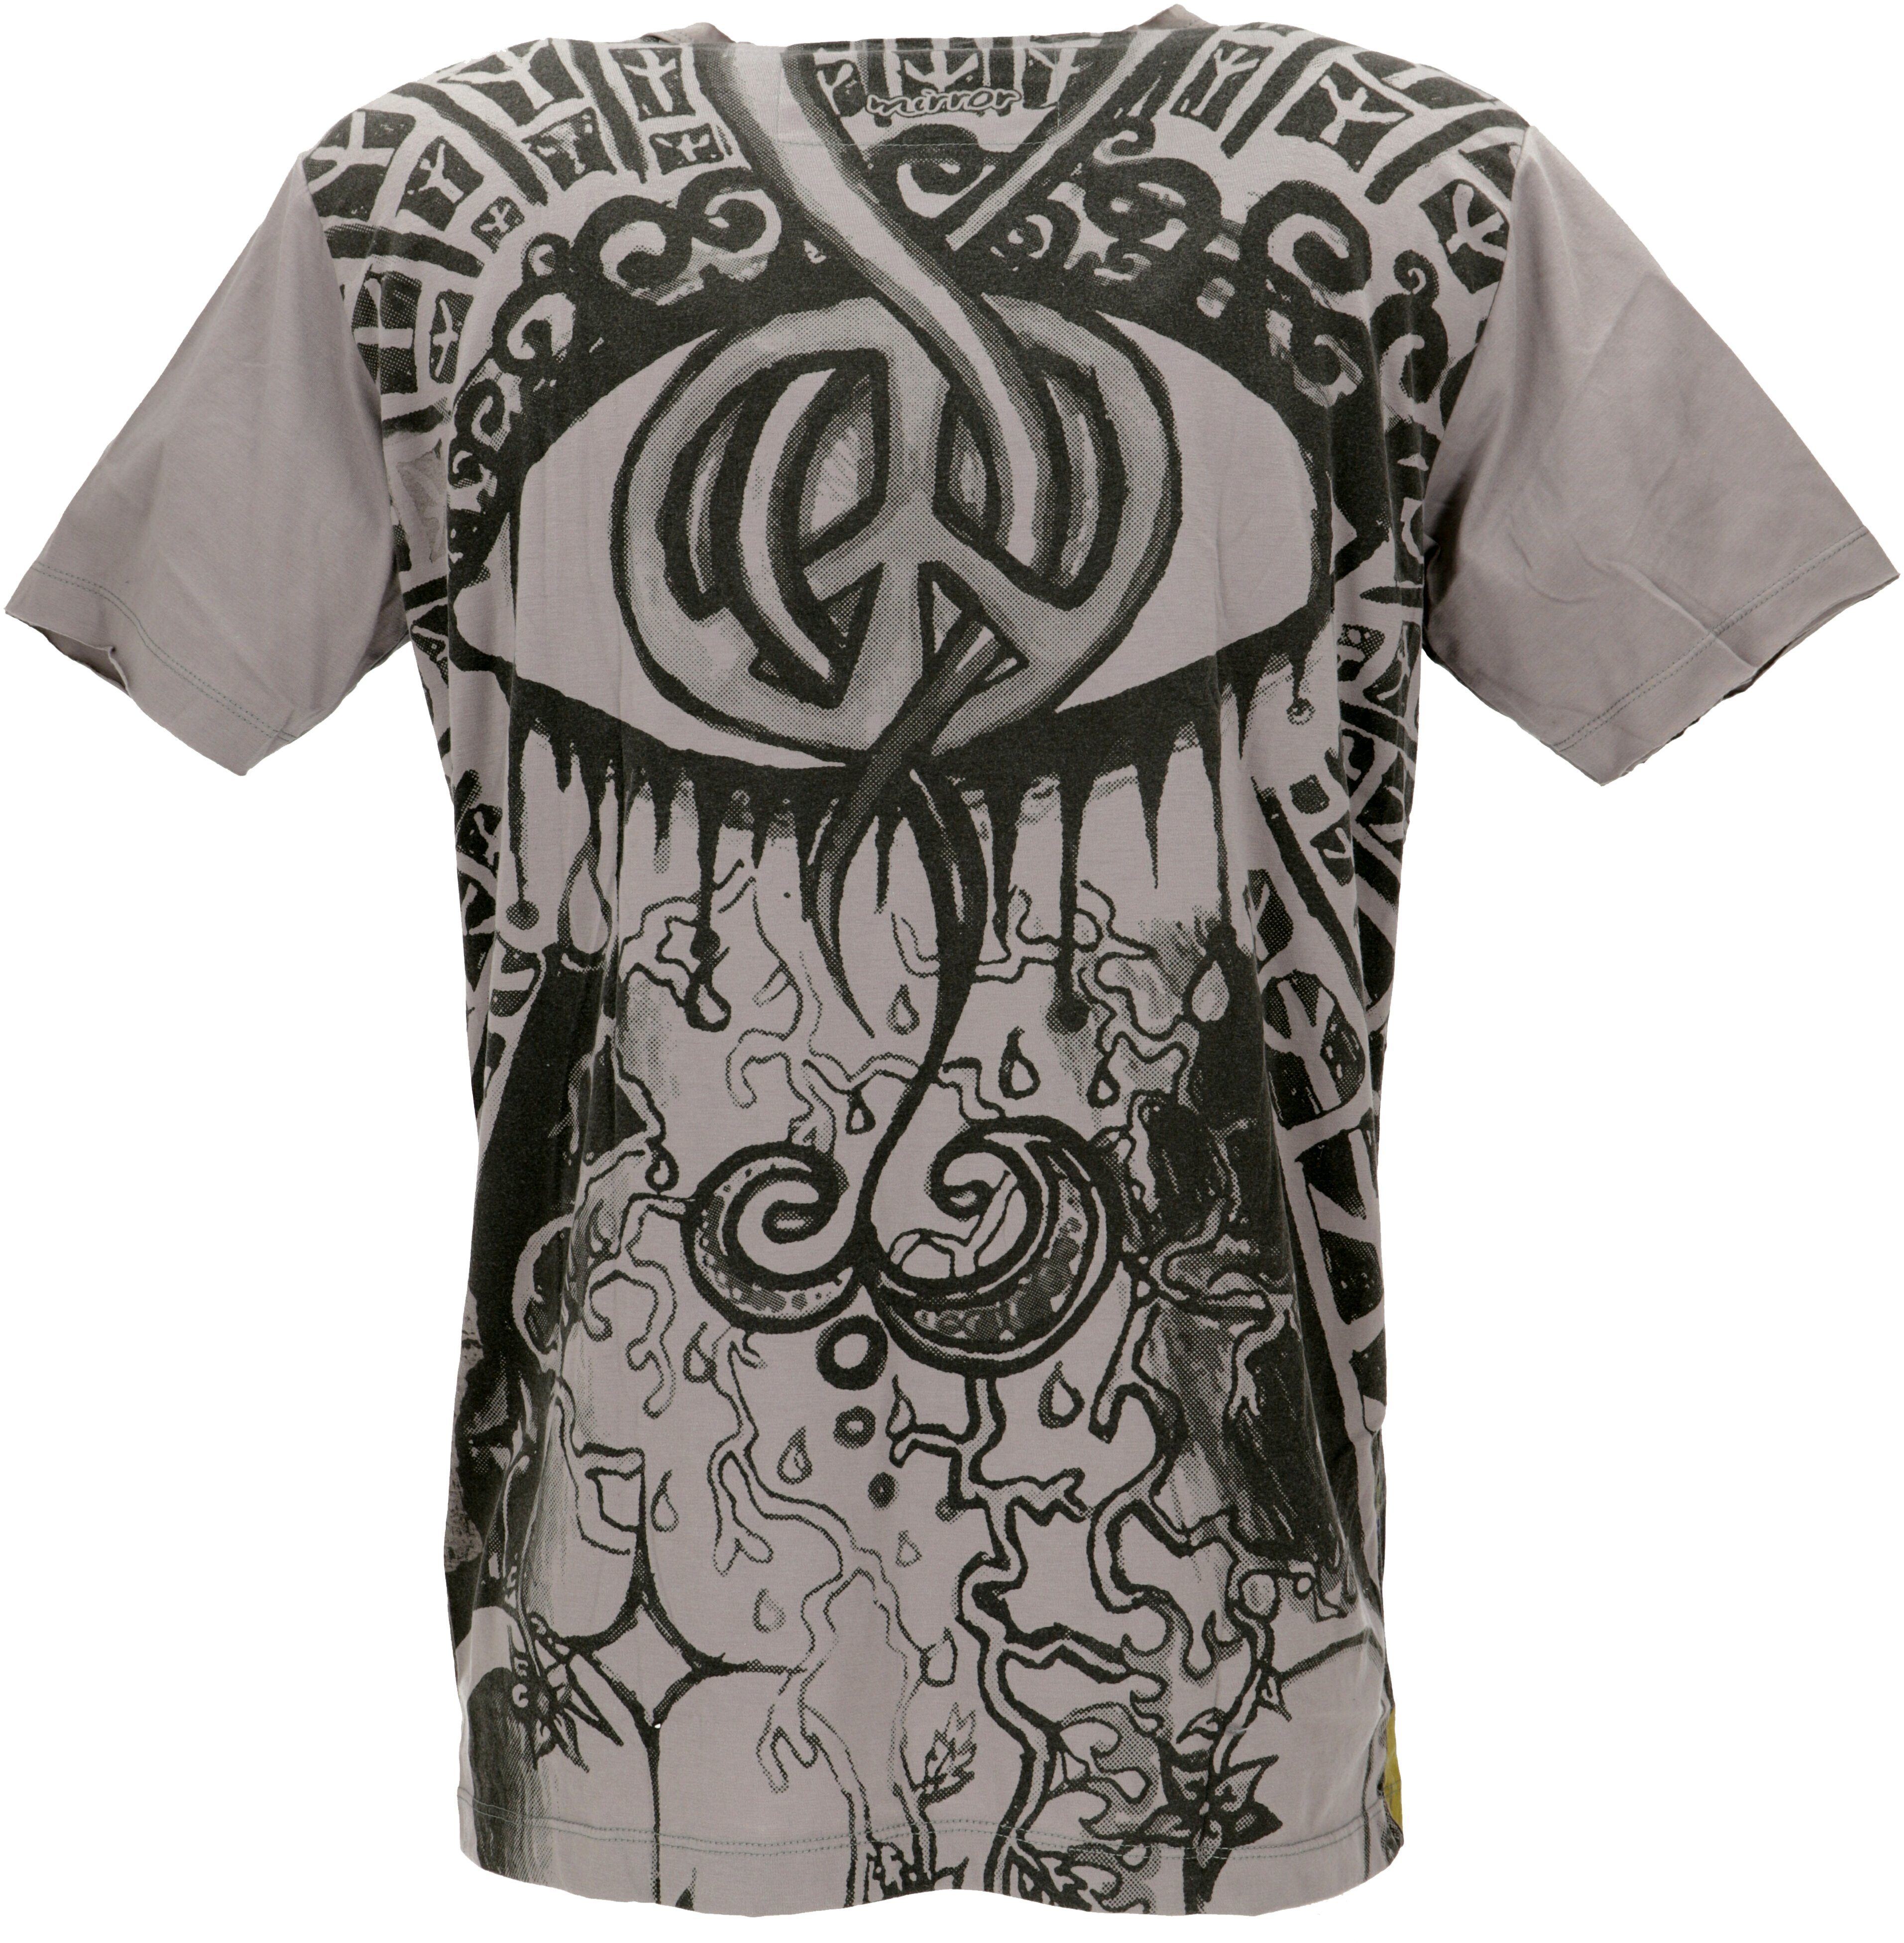 Guru-Shop T-Shirt Mirror T-Shirt grau alternative Goa Style, Festival, Bekleidung / Peace grau - Peace